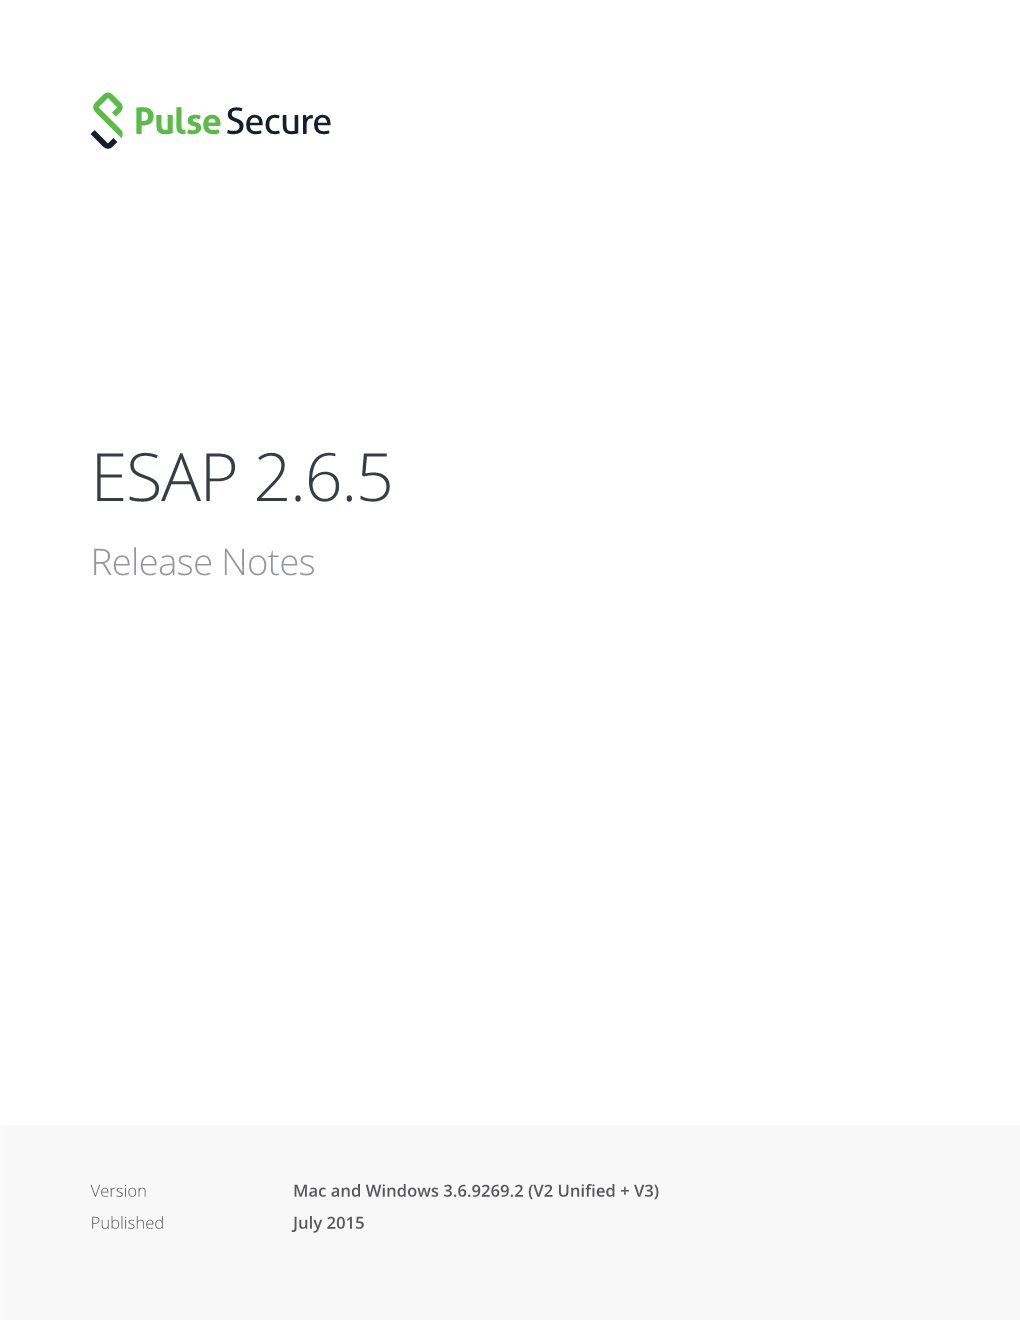 ESAP 2.6.5 Release Notes